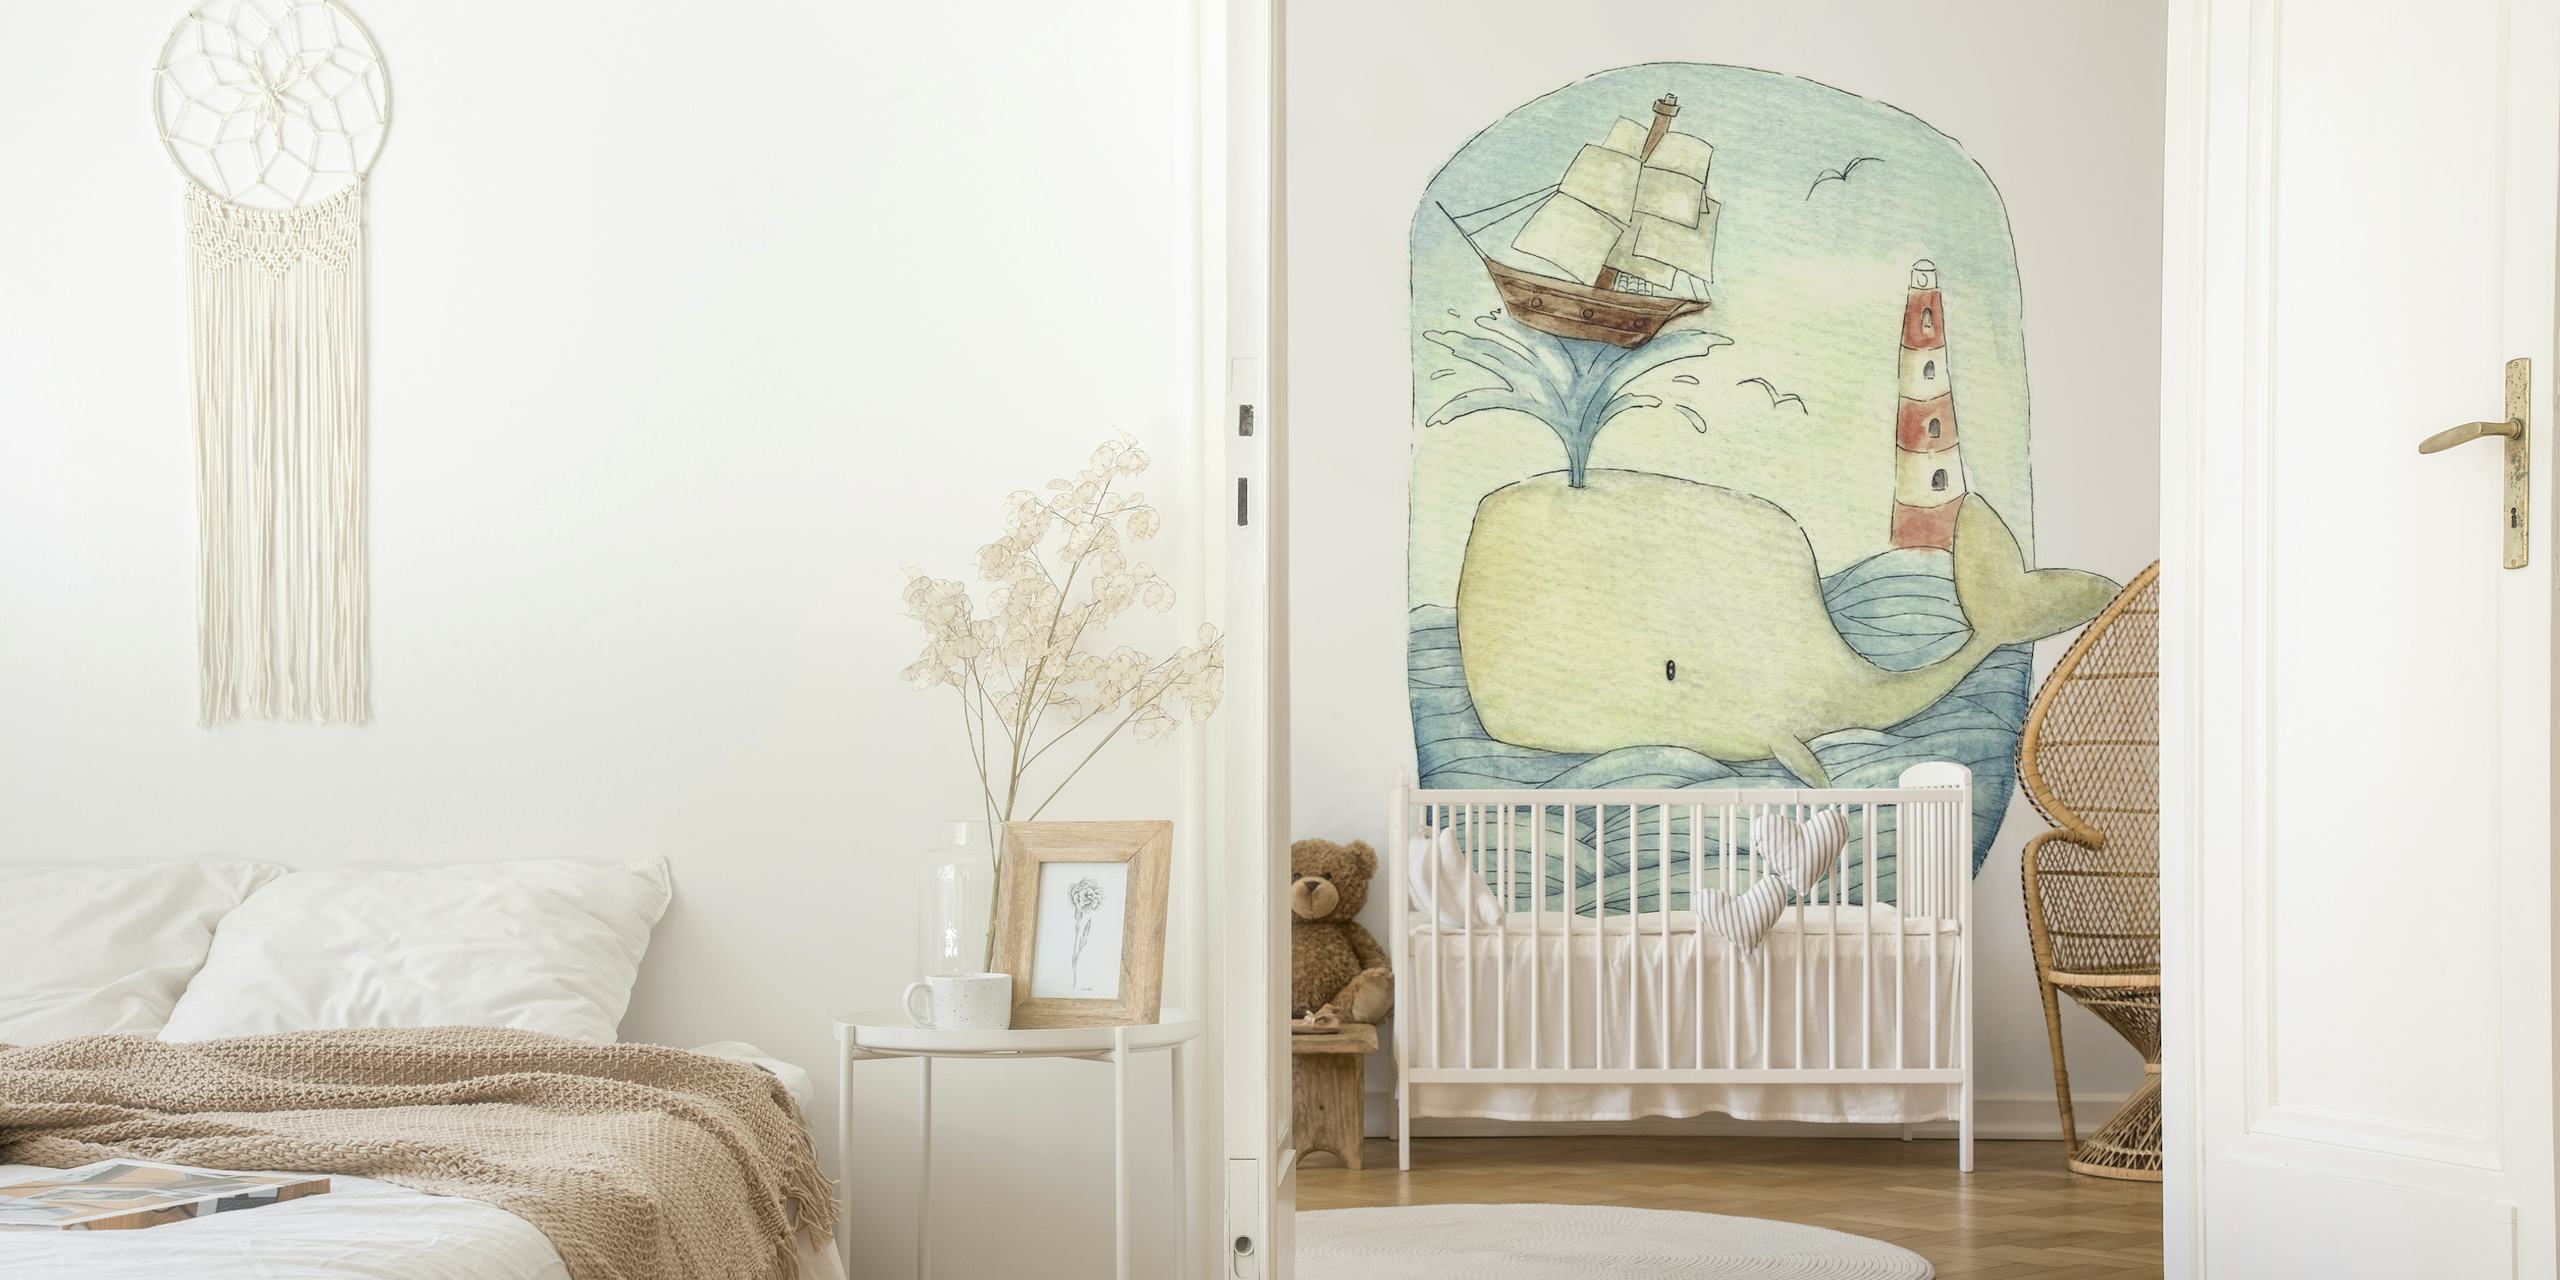 Ilustrativni zidni mural koji prikazuje simpatičnog kita s jedrilicom i svjetionikom u stilu akvarela